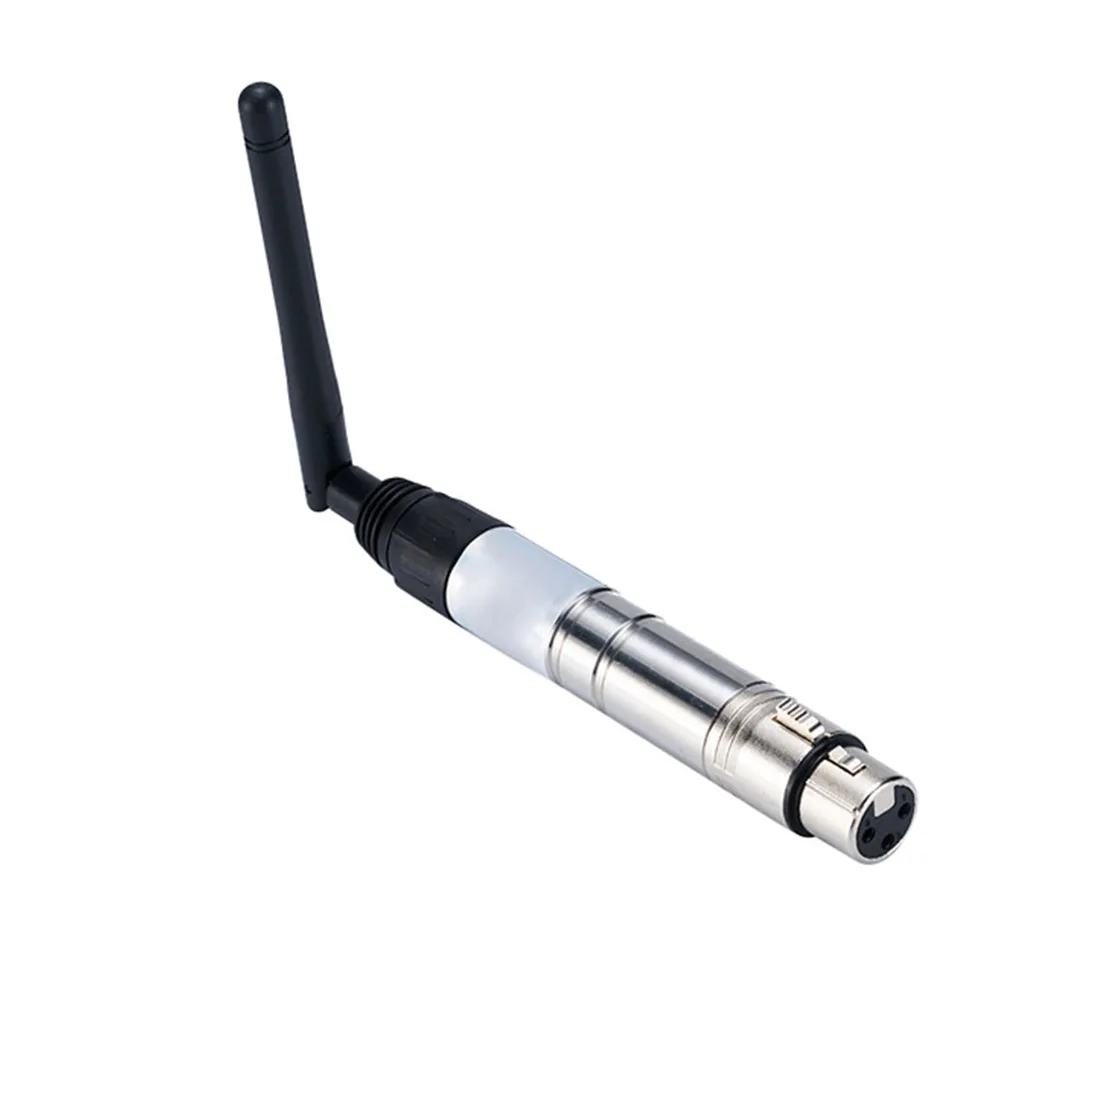 2,4G Pen-образный Беспроводной DMX512 свет Управление передатчик Kit для сценическое праздничное освещение EU/US/UK Plug